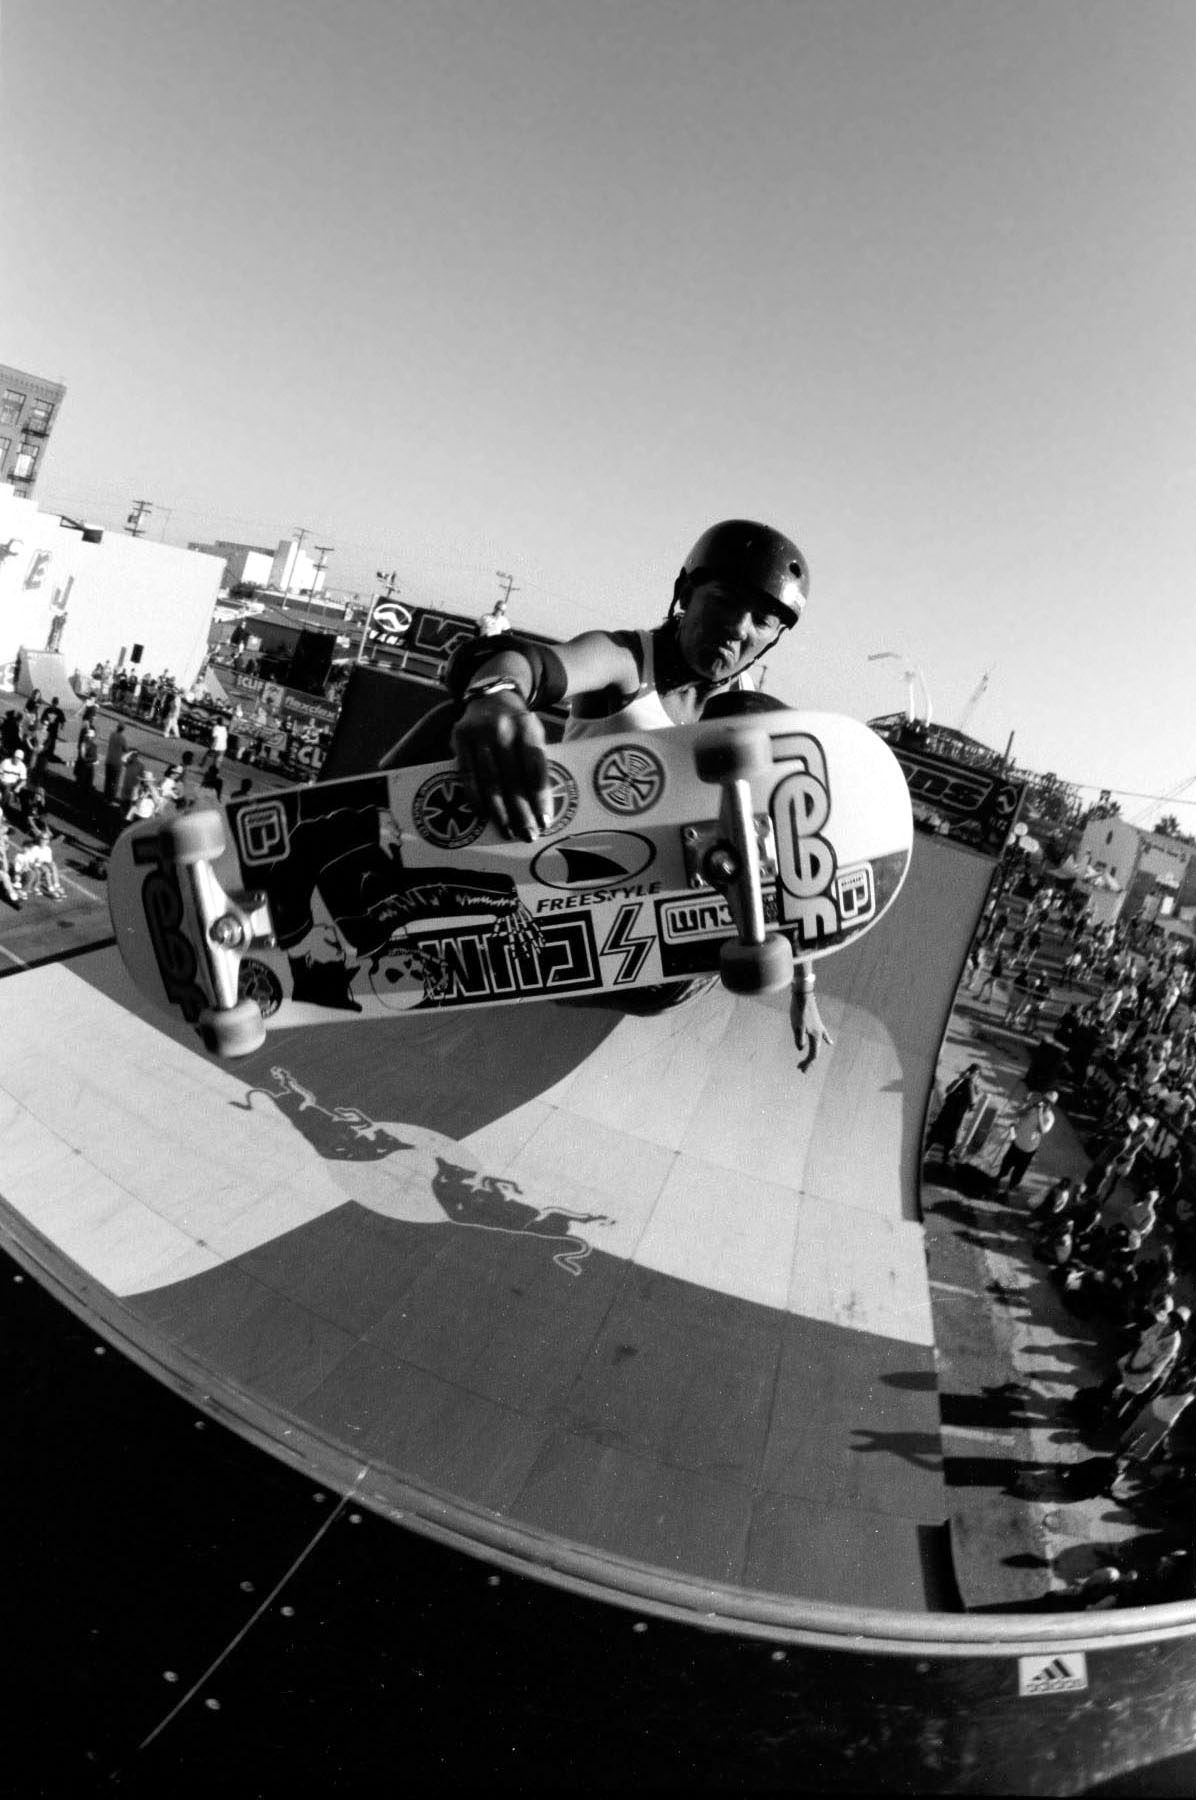 Skateboarder Jodi Mc Donald